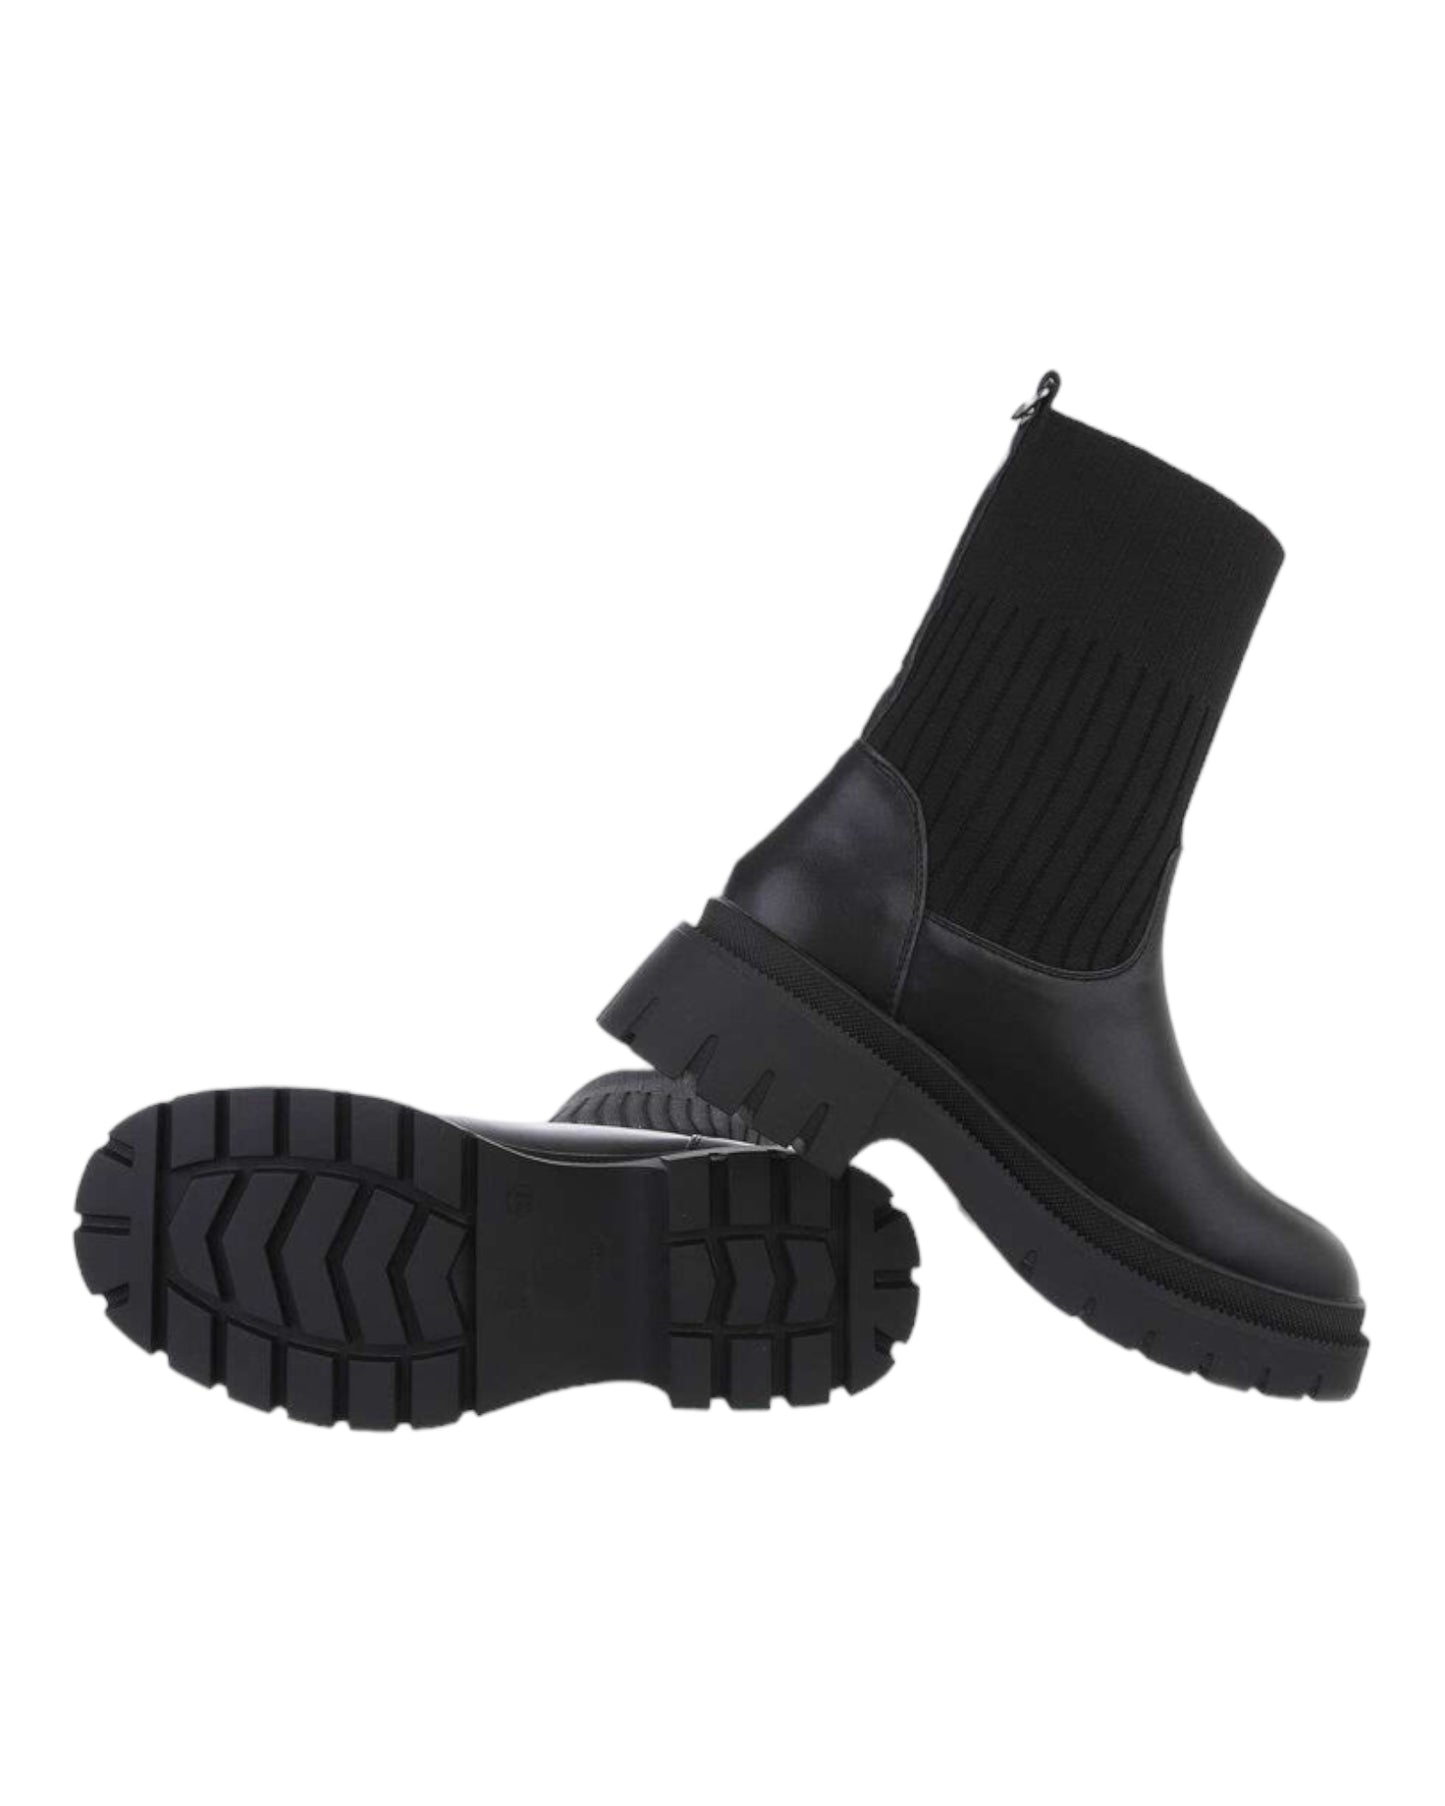 Bottines Noir à semelles compensés chaussette - NuptiaLove